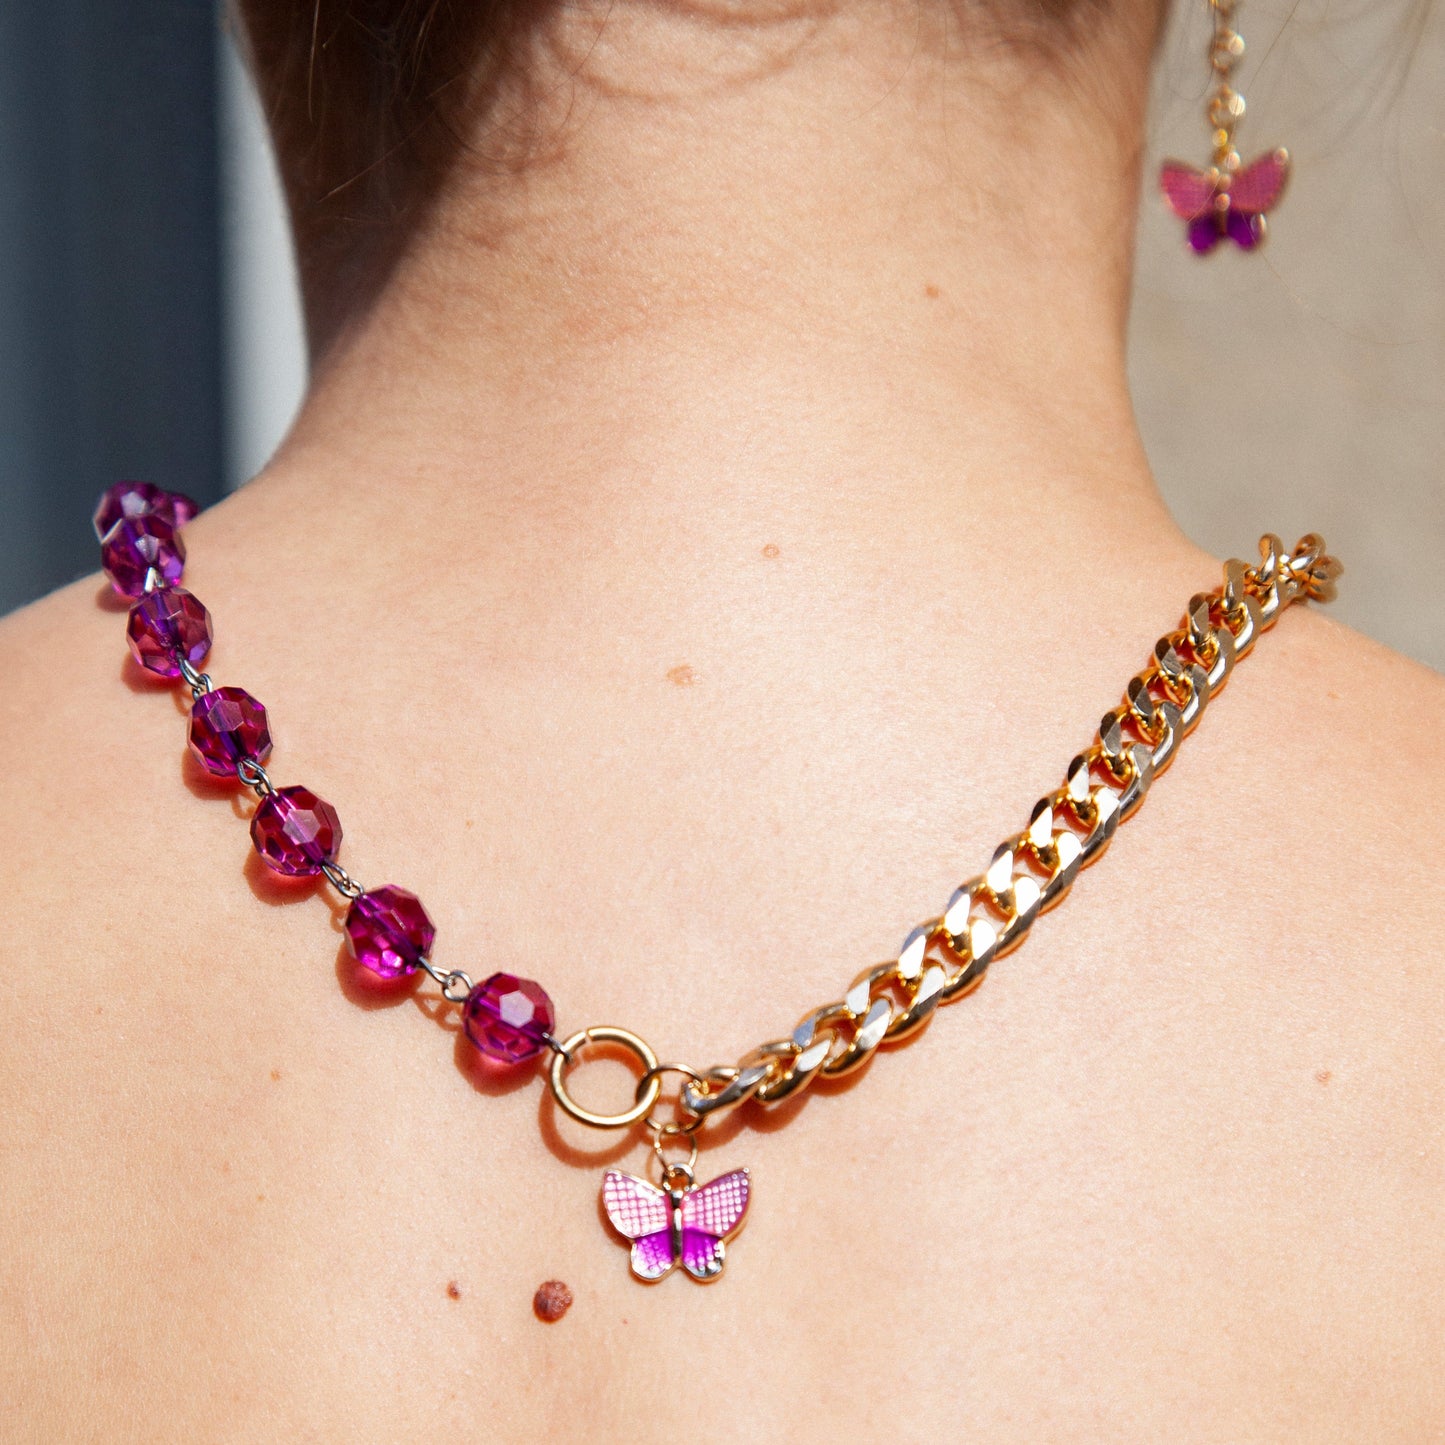 Collier upcyclé asymétrique chaine dorée perles violettes pendentif papillon